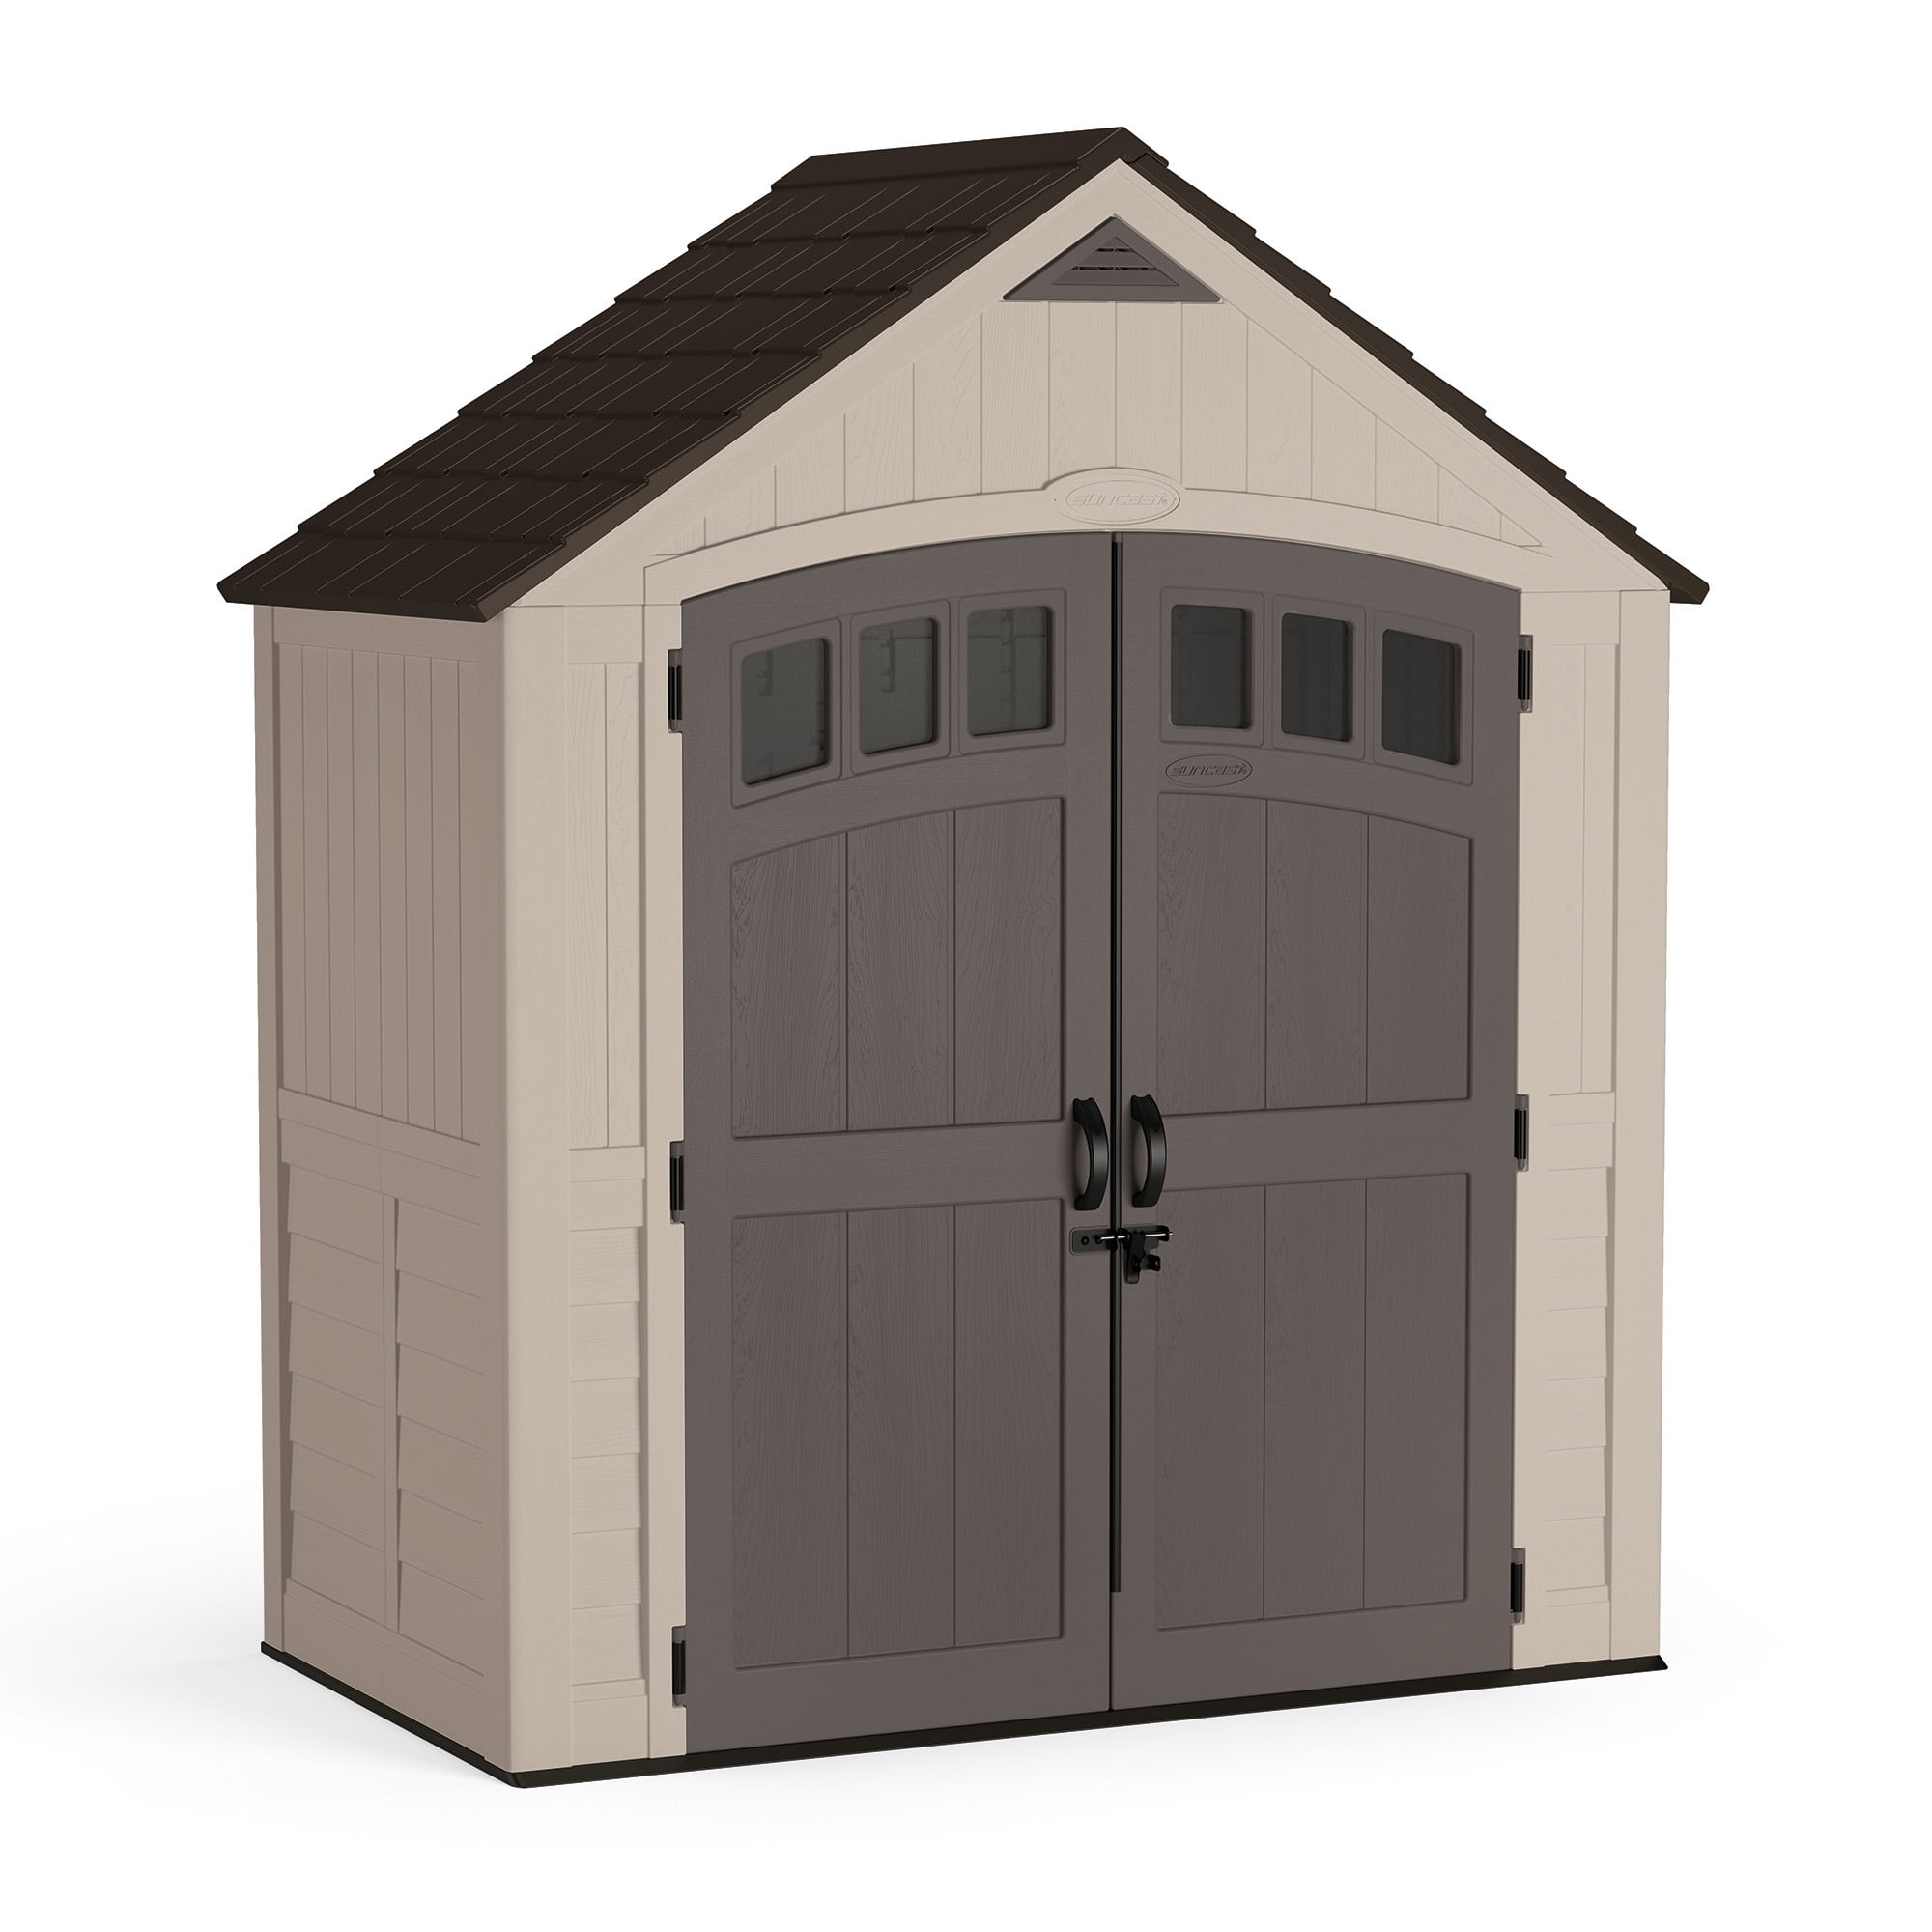 7 x 4 storage shed